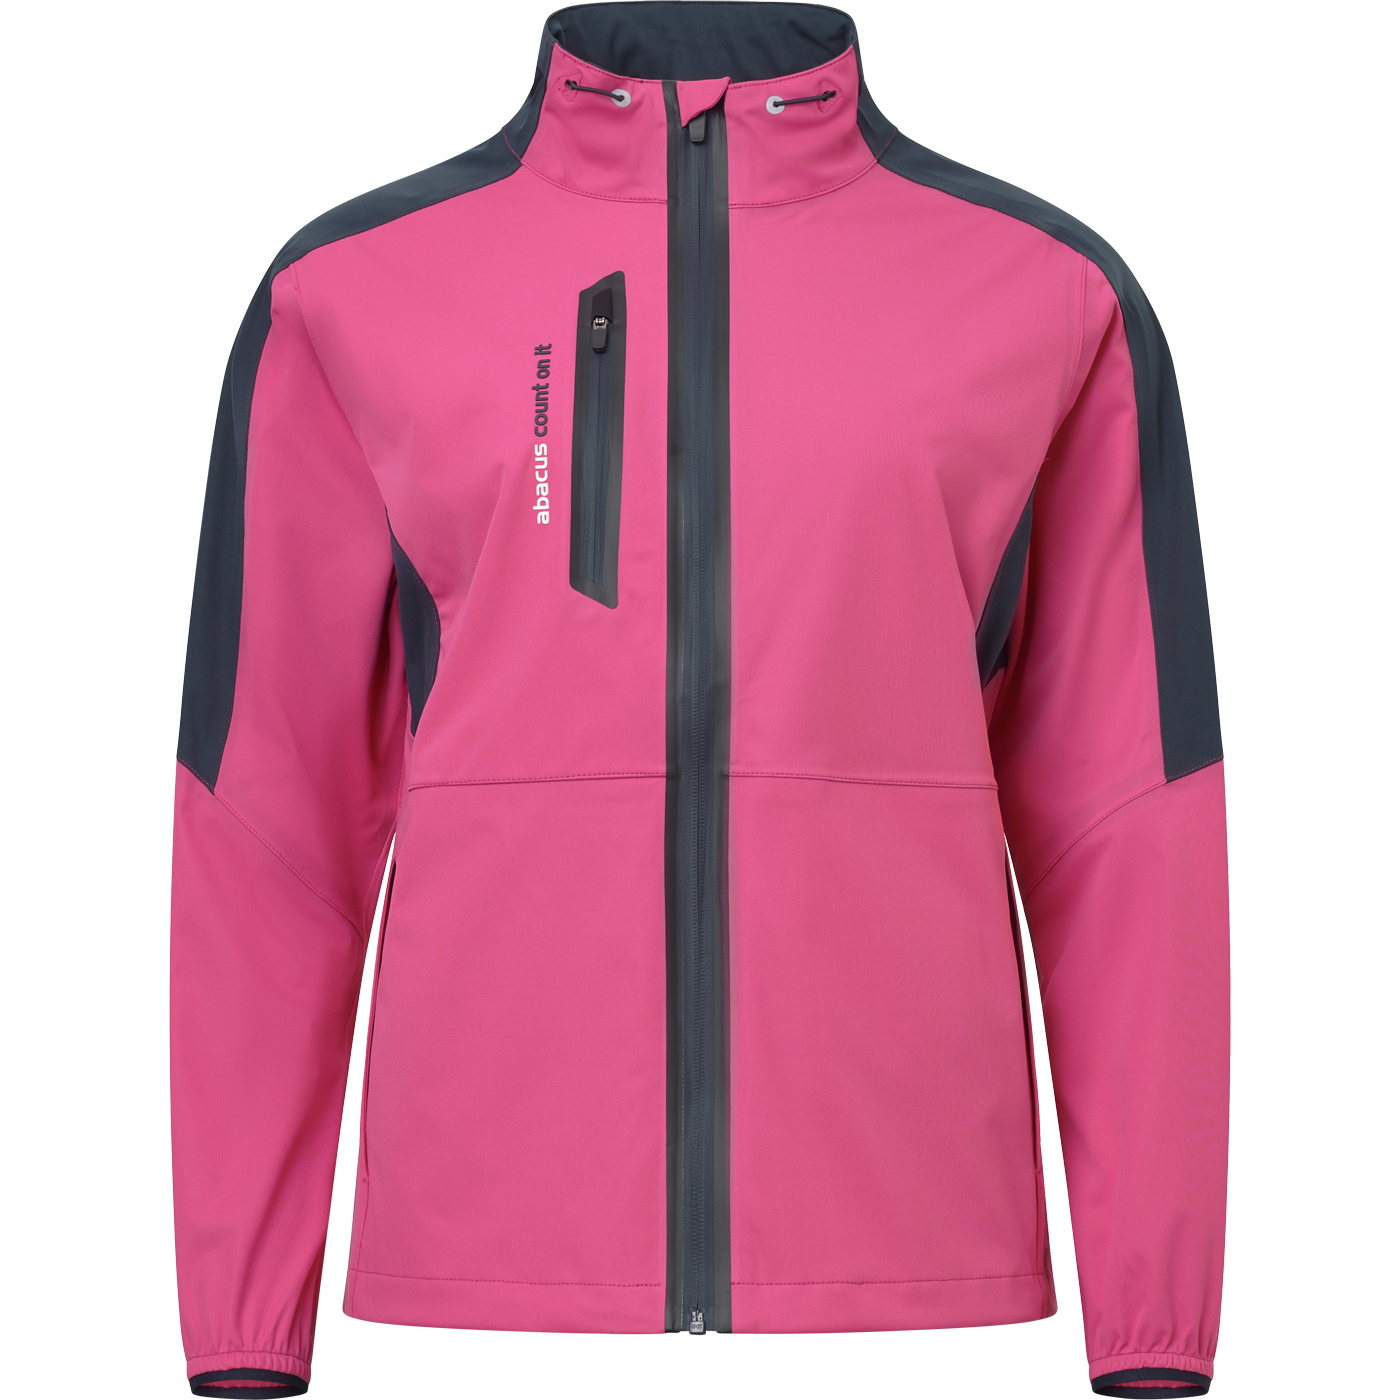 Lds Bounce rainjacket - rose in the group WOMEN / Rainwear at Abacus Sportswear (2080490)